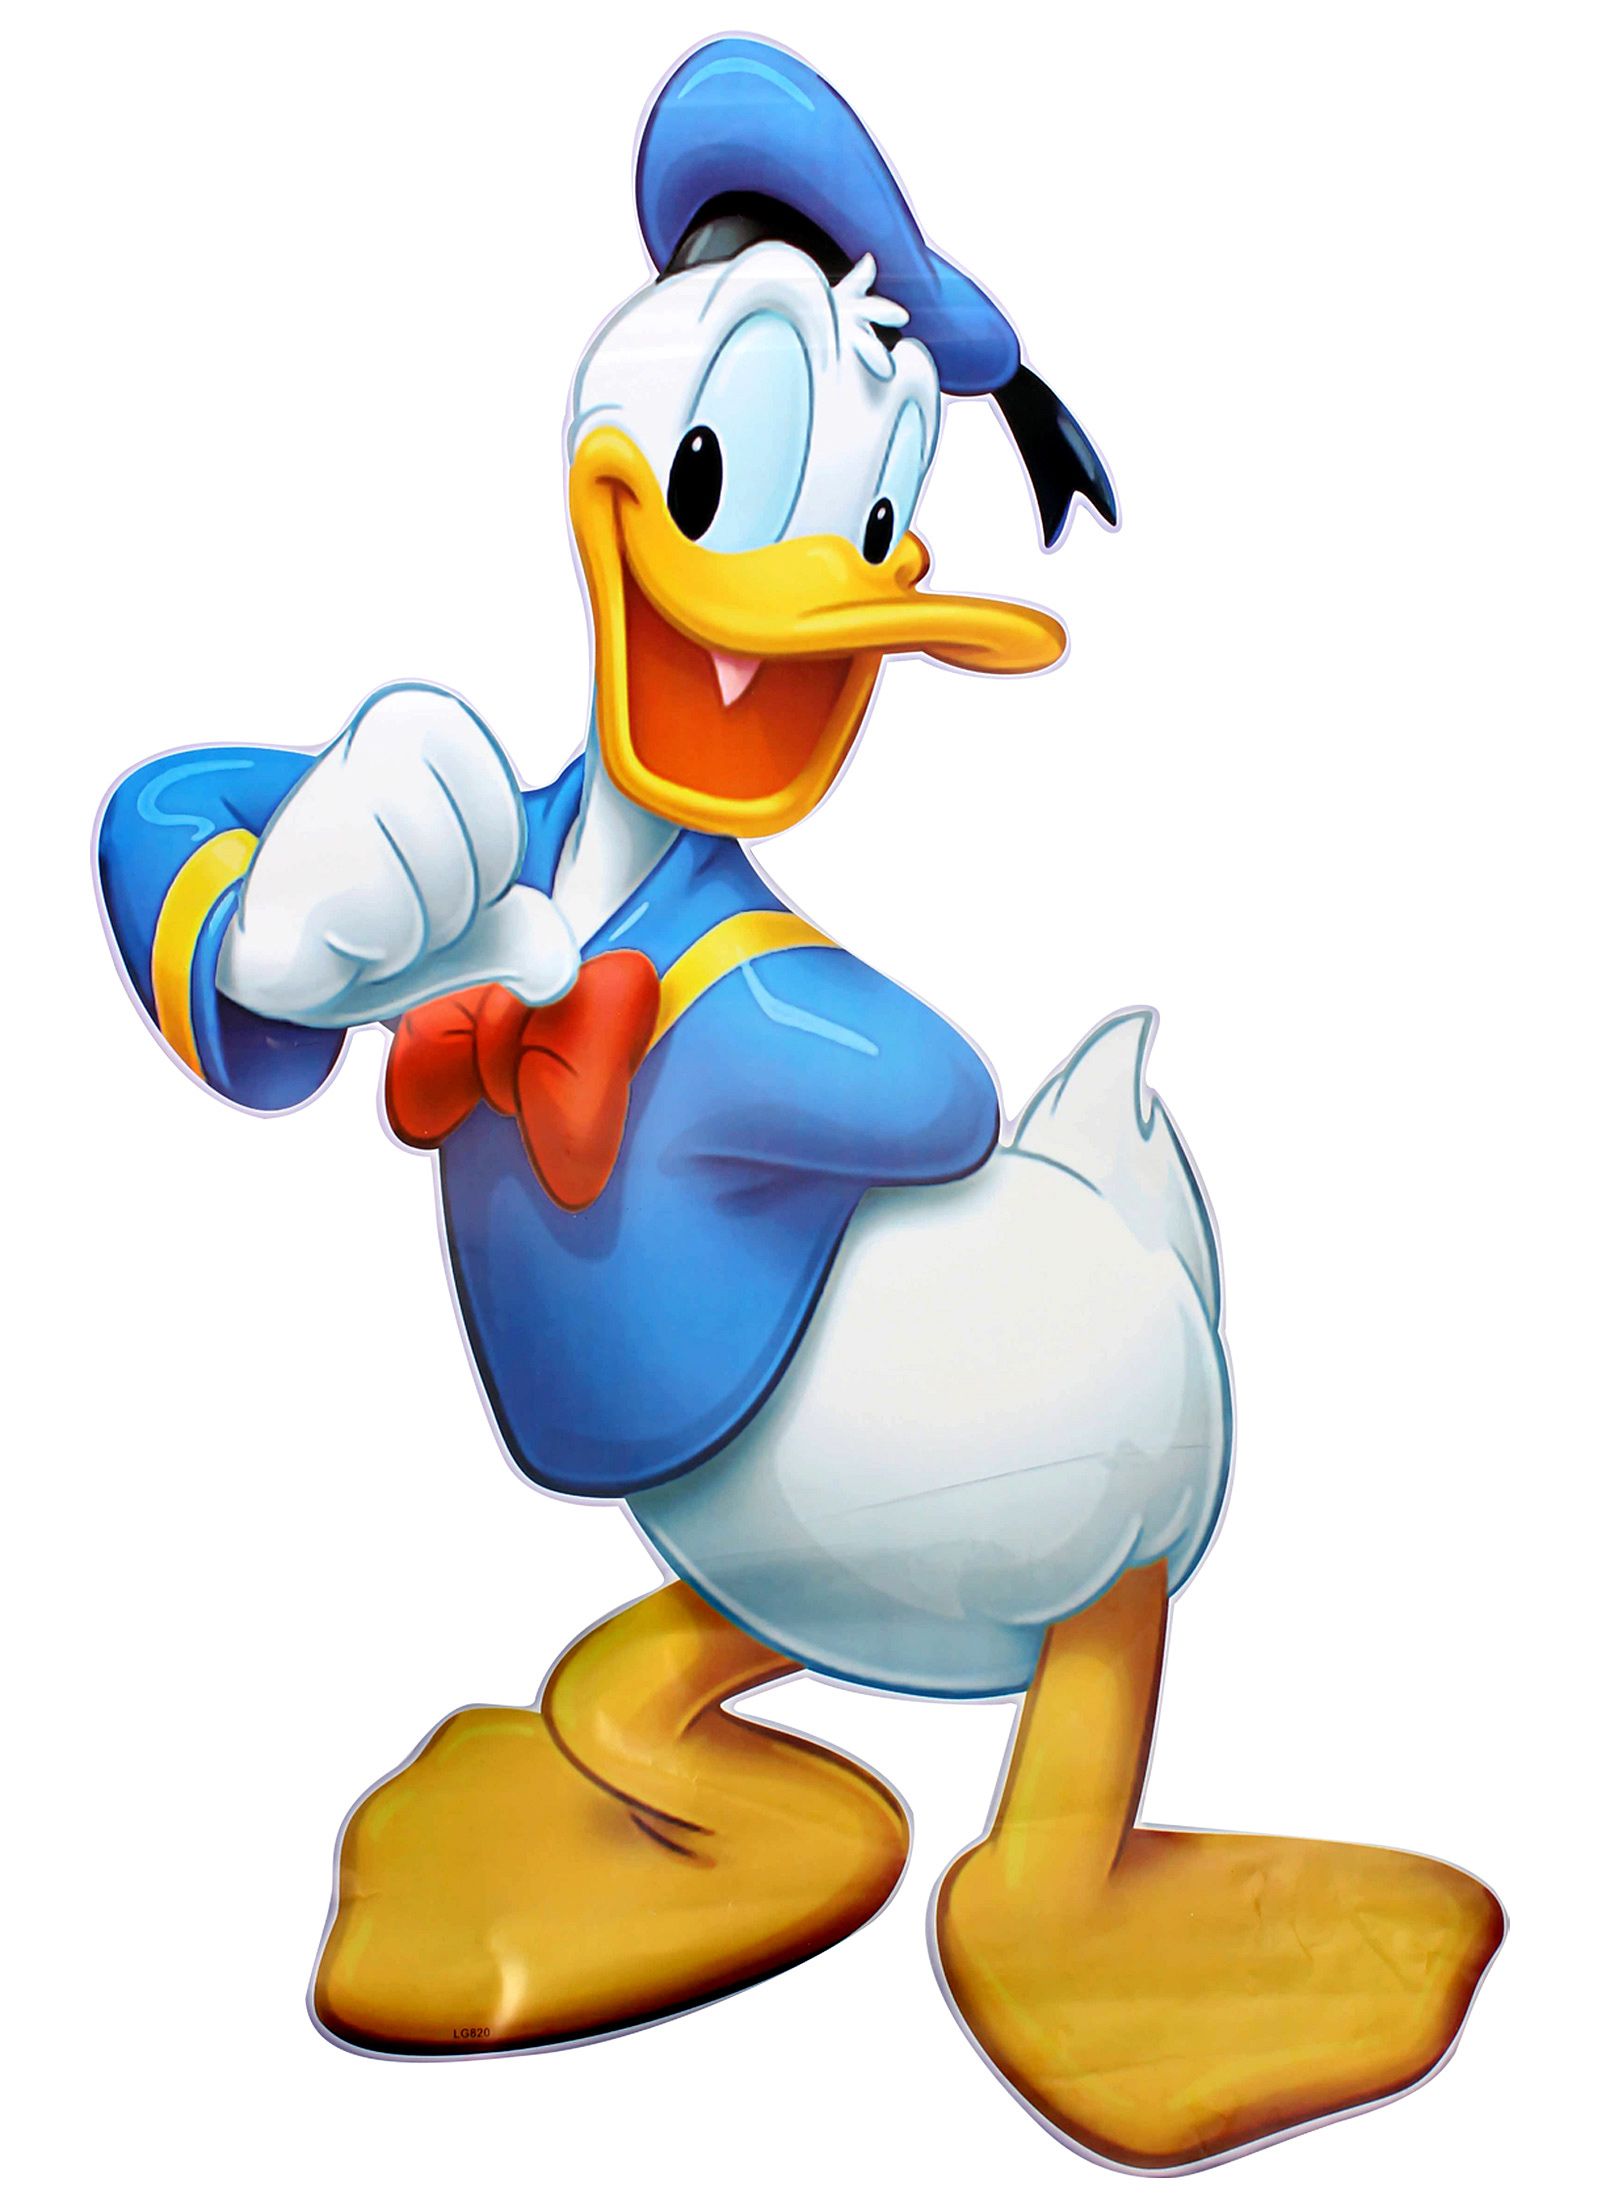 Donald Duck Share Wallpaper